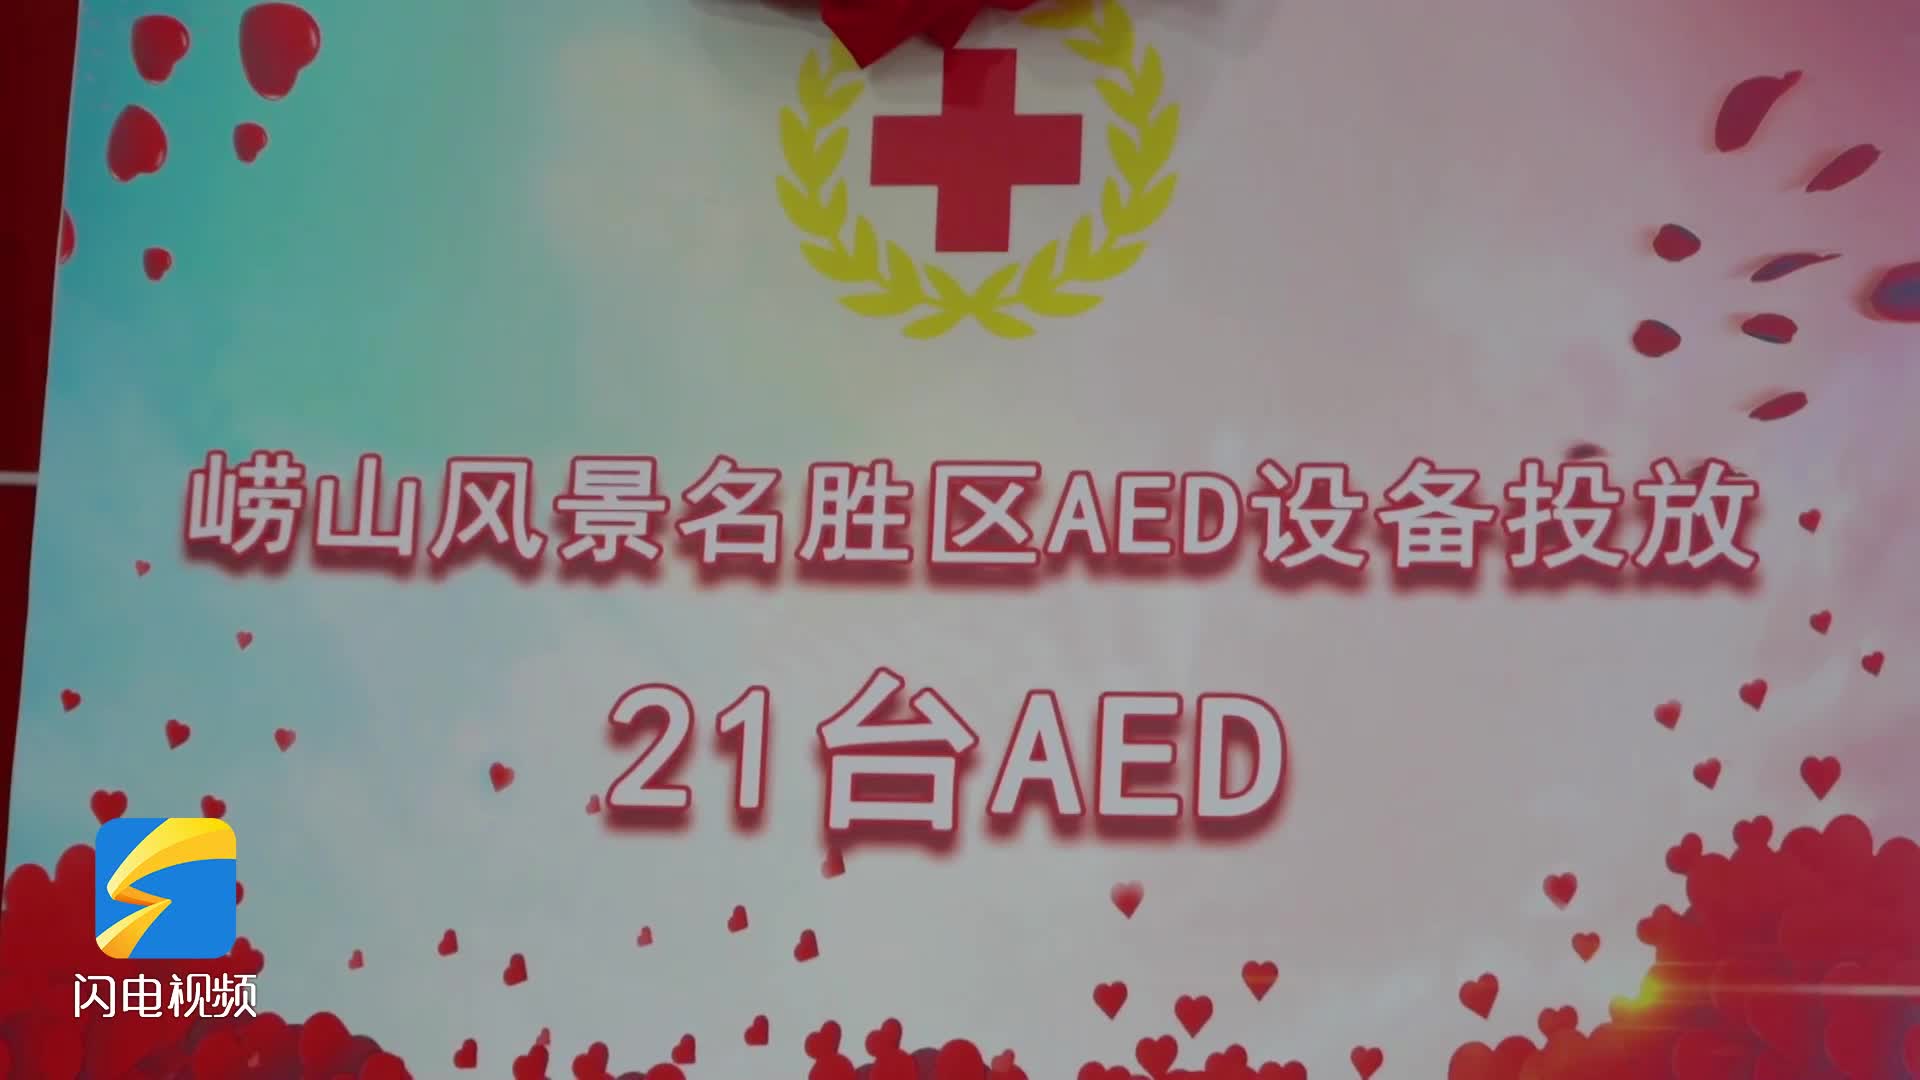 21台AED设备投放崂山风景区 守护广大游客生命安全